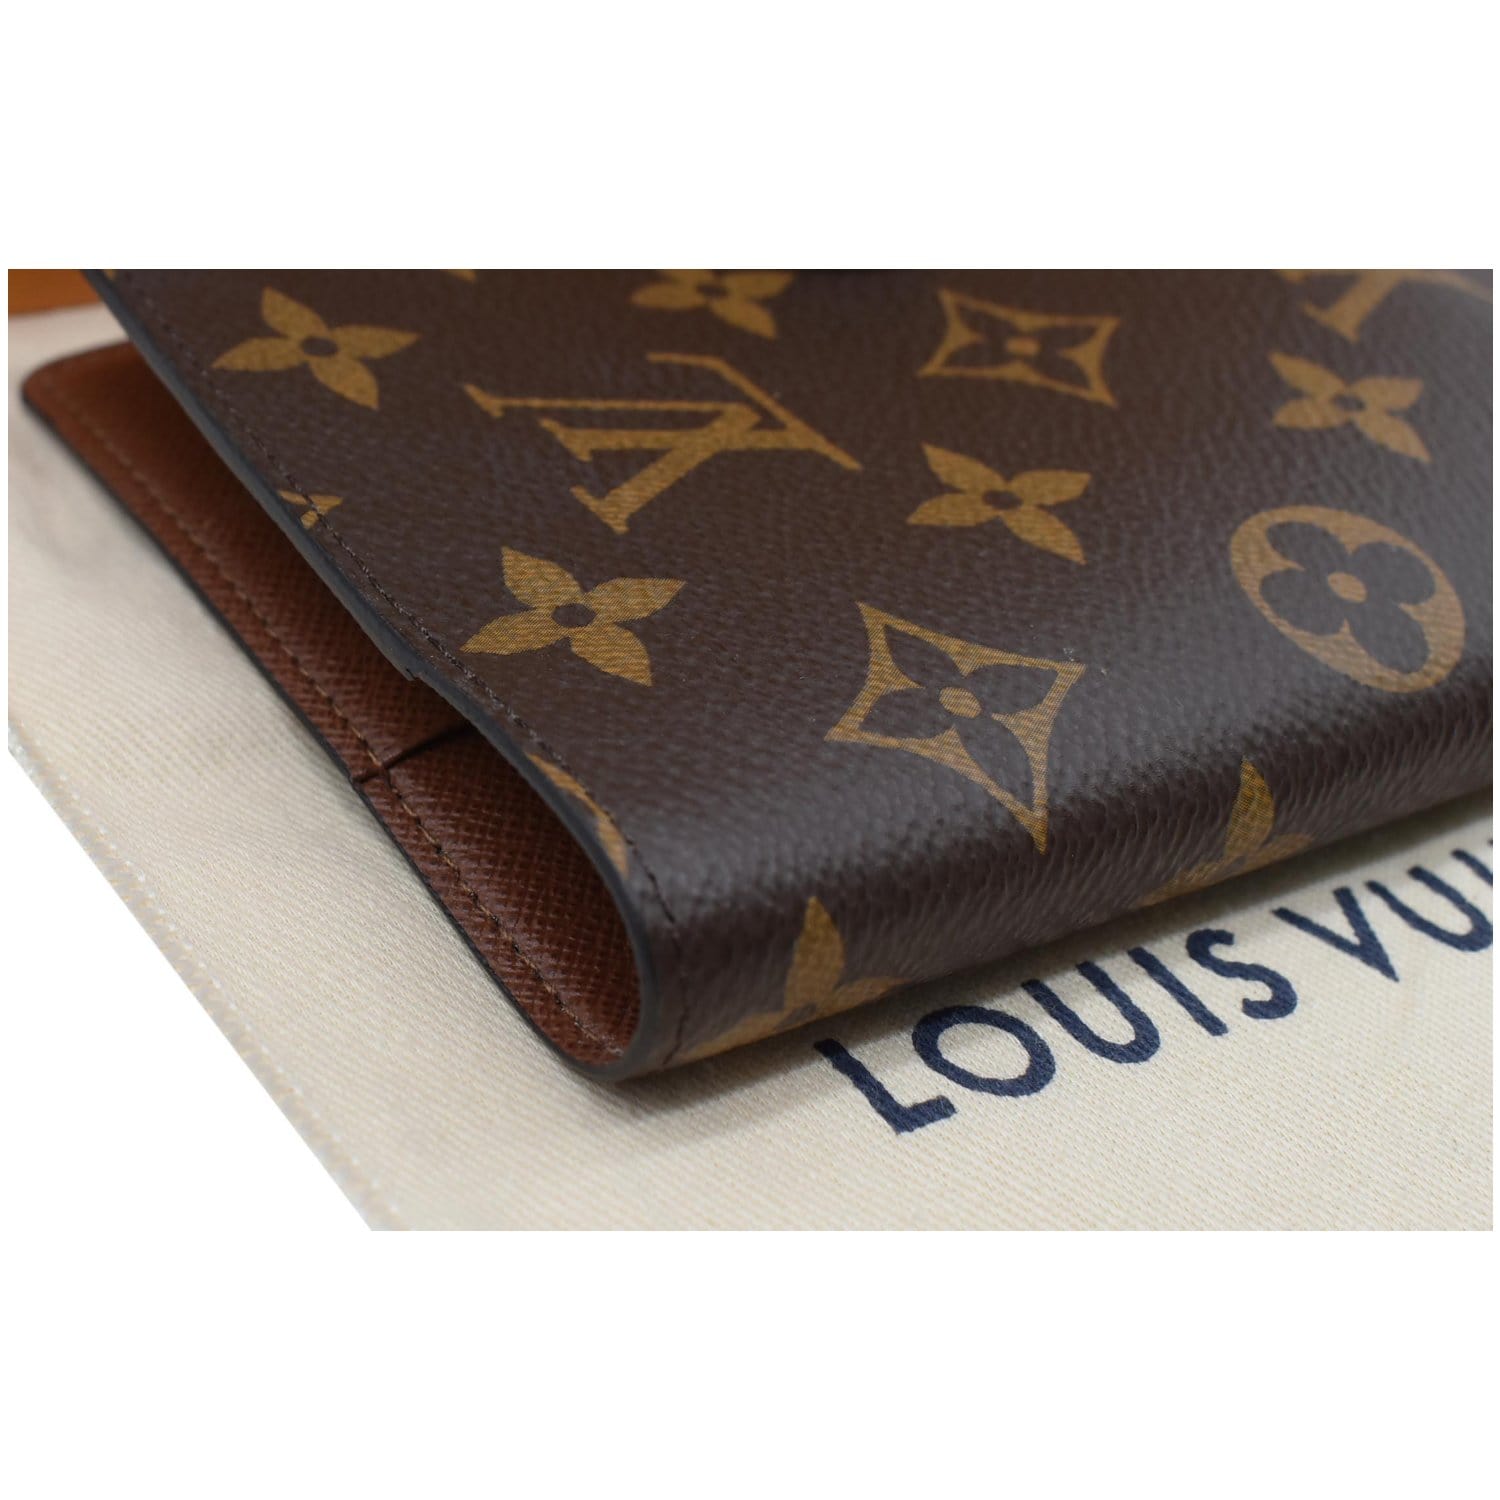 Louis Vuitton Couverture Agenda de Bureau Brown Canvas Wallet (Pre-Owned)